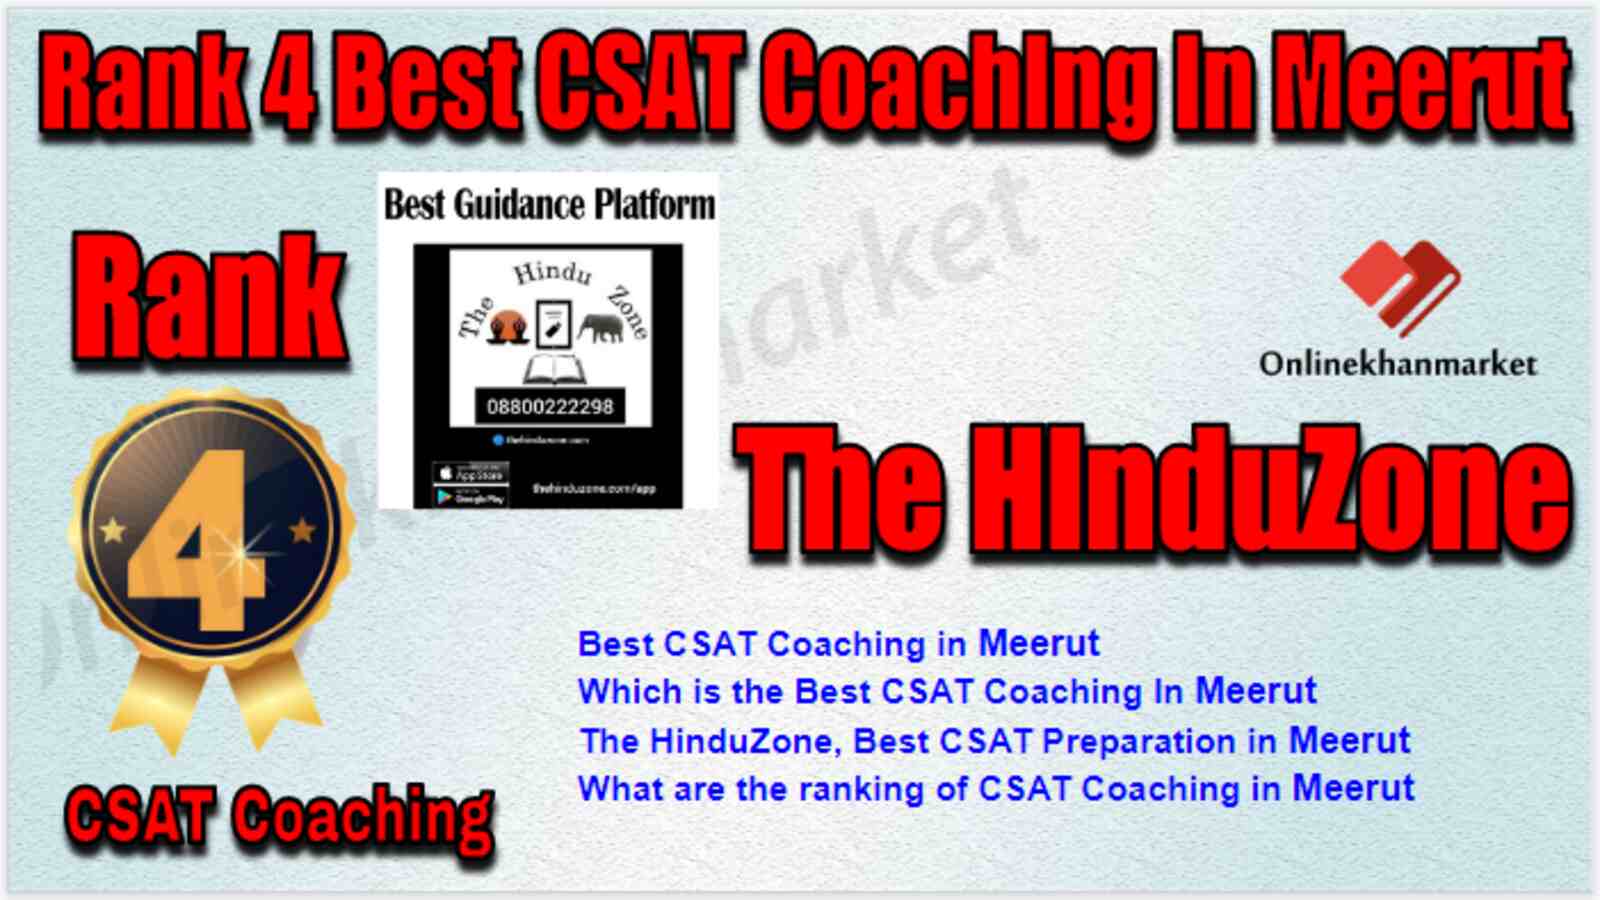 Rank 4 Best CSAT Coaching in Meerut